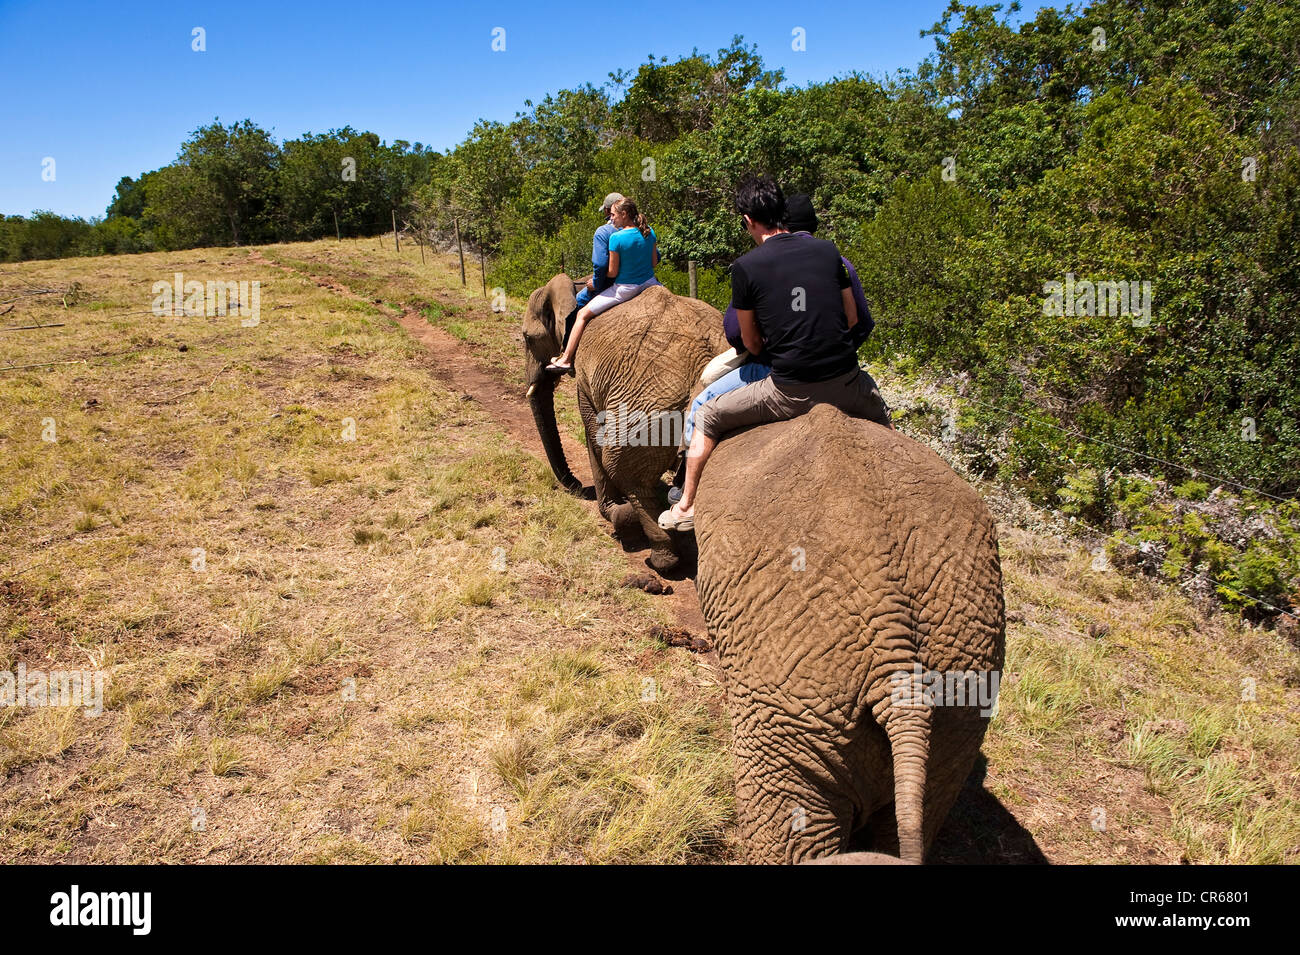 L'Afrique du Sud, Eastern Cape, région de The Crags dans les environs de Plettenberg Bay, le sanctuaire d'éléphants, safari sur Banque D'Images